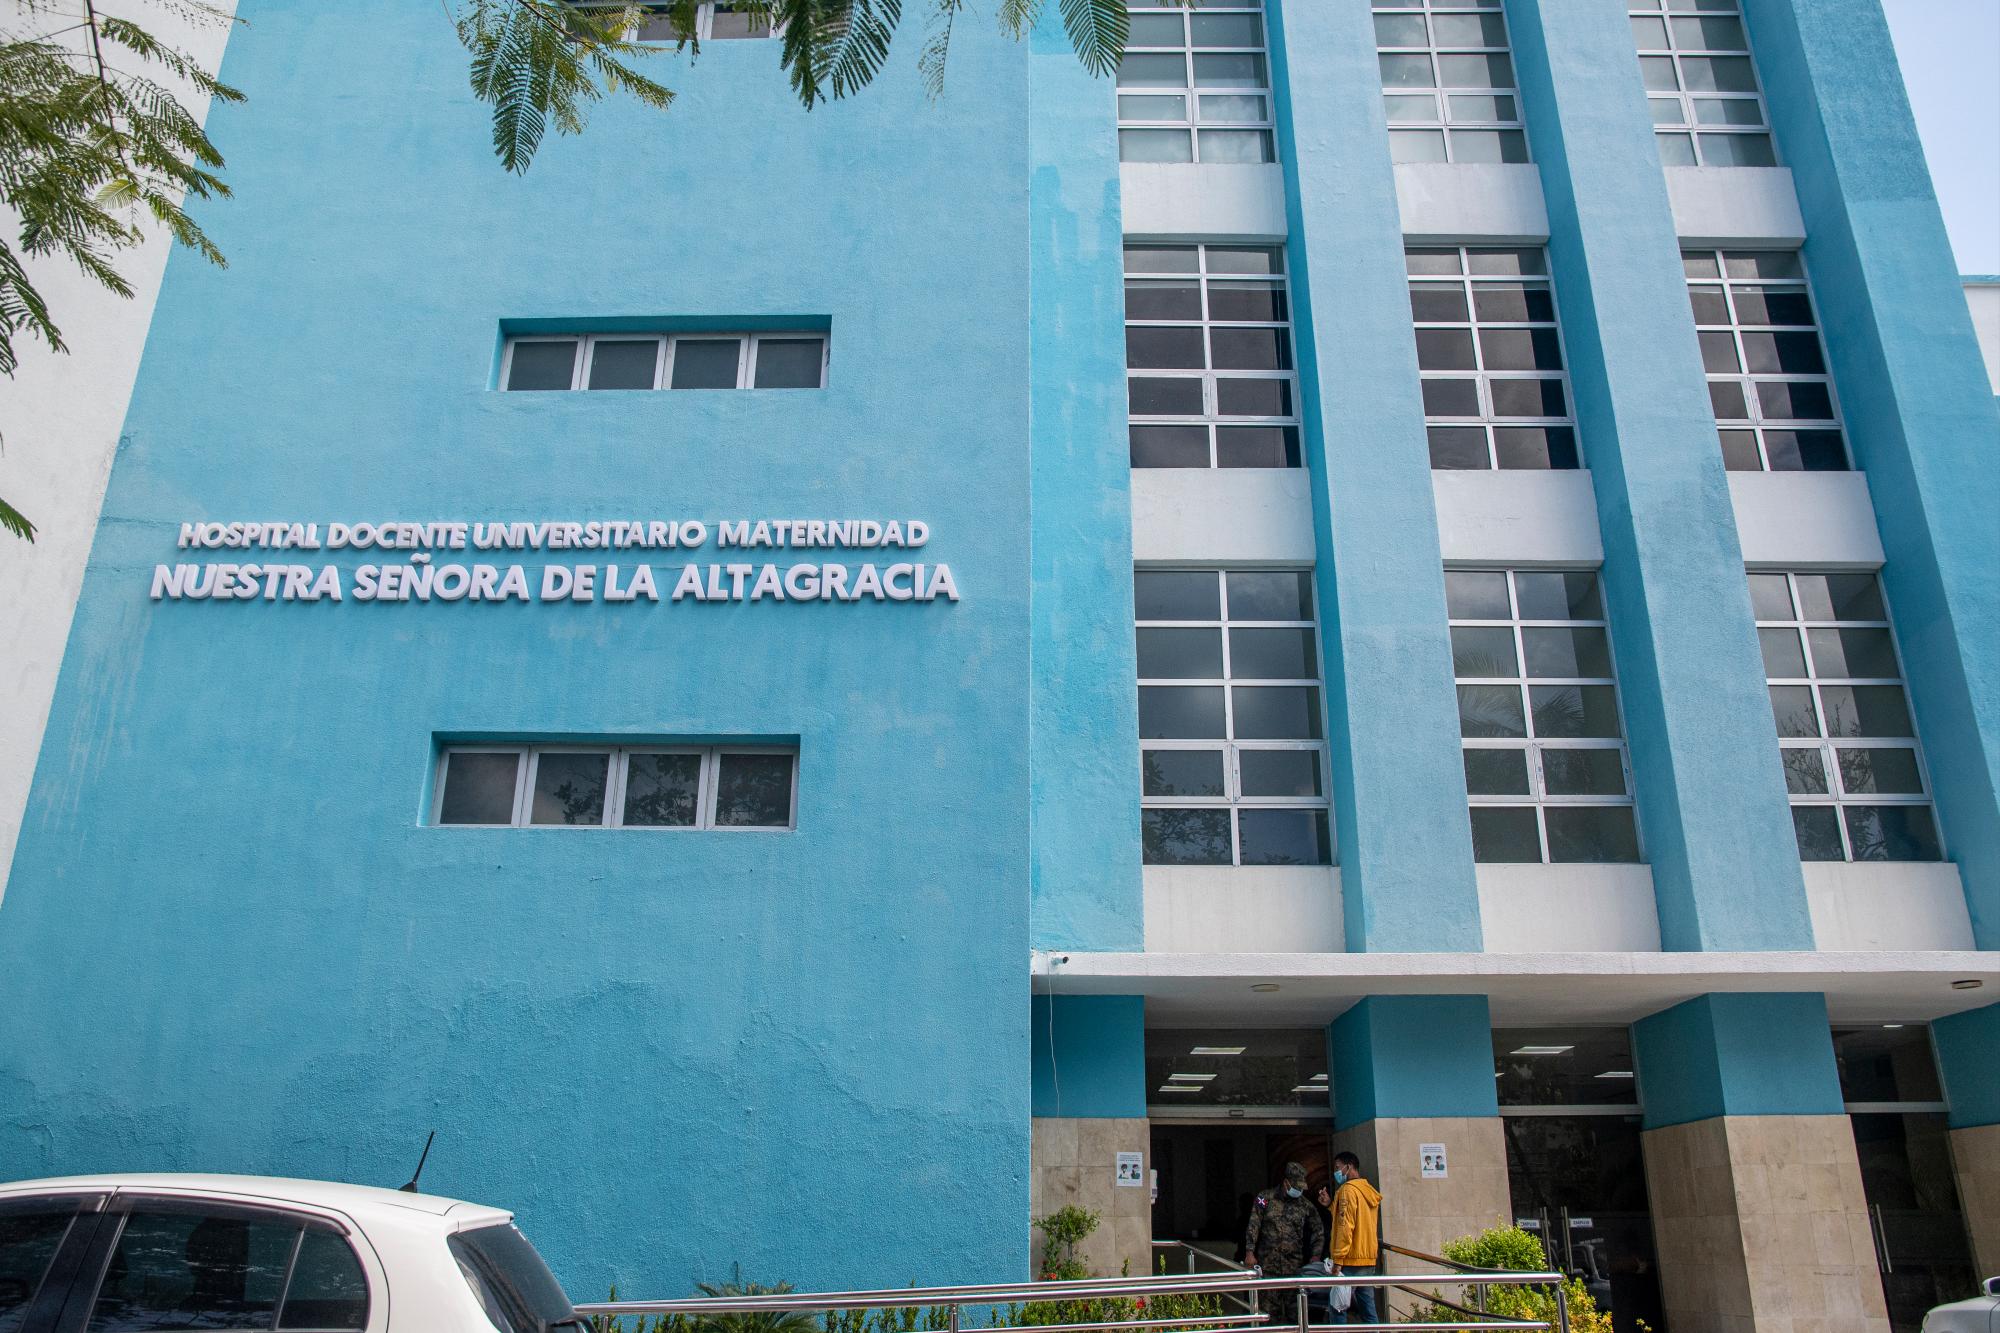 La maternidad la Altagracia, en Santo Domingo, ha registrado 6,113 nacimientos en los primeros seis mese del año, l 68% durante la cuarentena por la pandemia del Coronavirus. Foto: Danelis Sena/Diario Libre